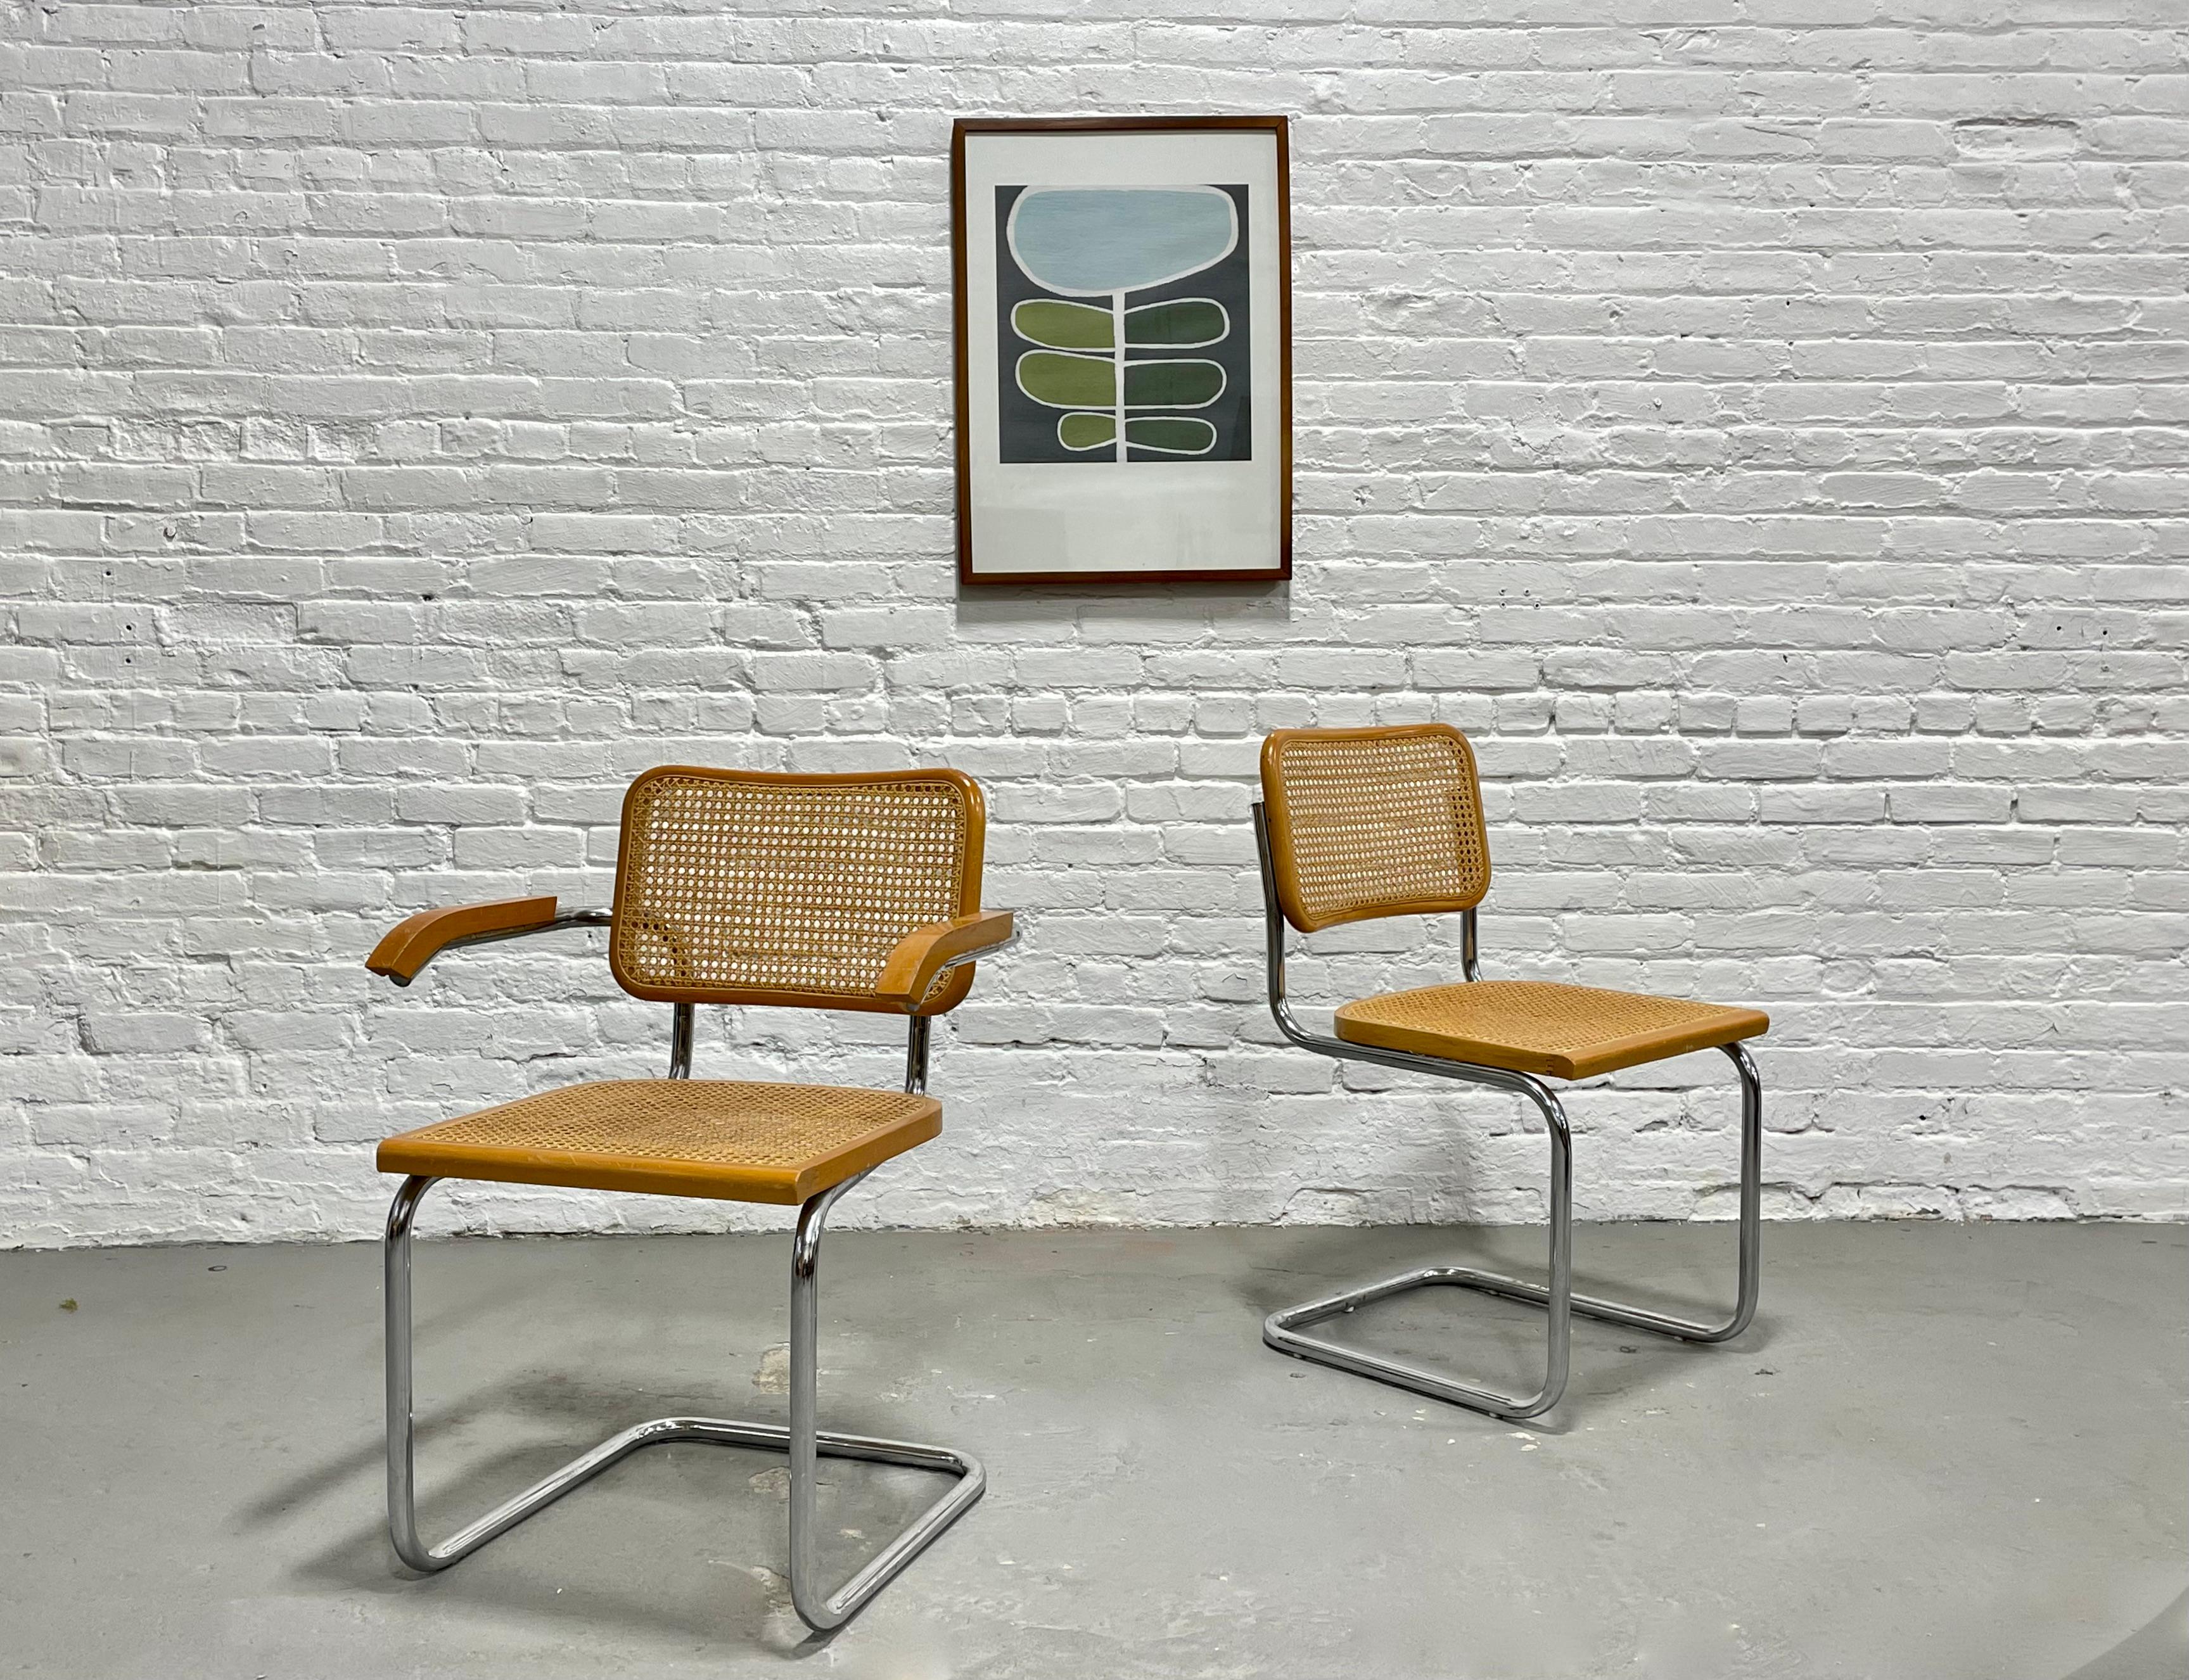 Paire de chaises de salle à manger modernes du milieu du siècle, style Marcel Breuer Cesca. Les cadres sont fabriqués en acier tubulaire et les dossiers cannelés sont ininterrompus et ravissants, avec des détails d'aboutage le long des bords de